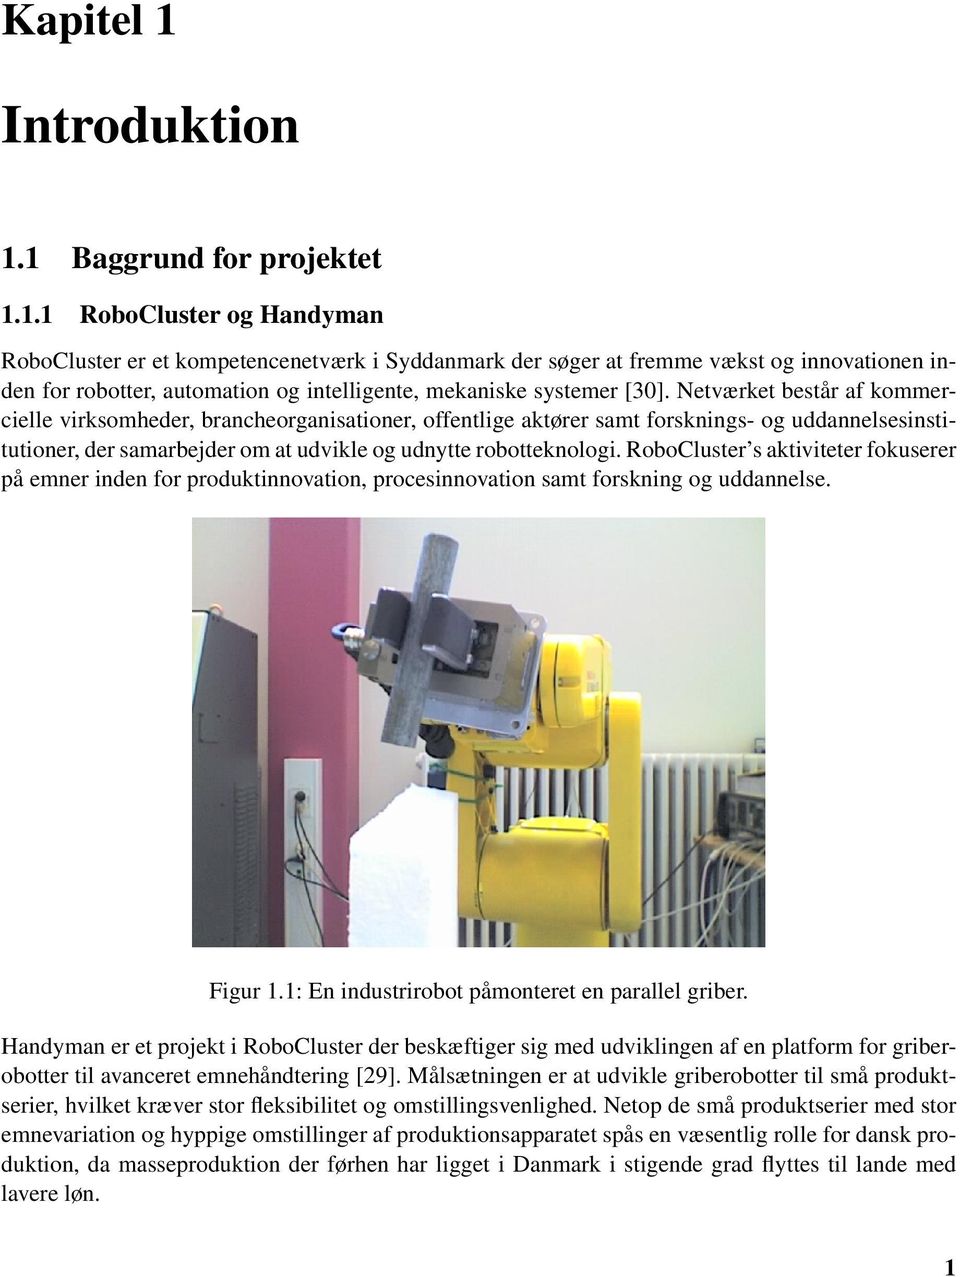 RoboCluster s aktiviteter fokuserer på emner inden for produktinnovation, procesinnovation samt forskning og uddannelse. Figur 1.1: En industrirobot påmonteret en parallel griber.